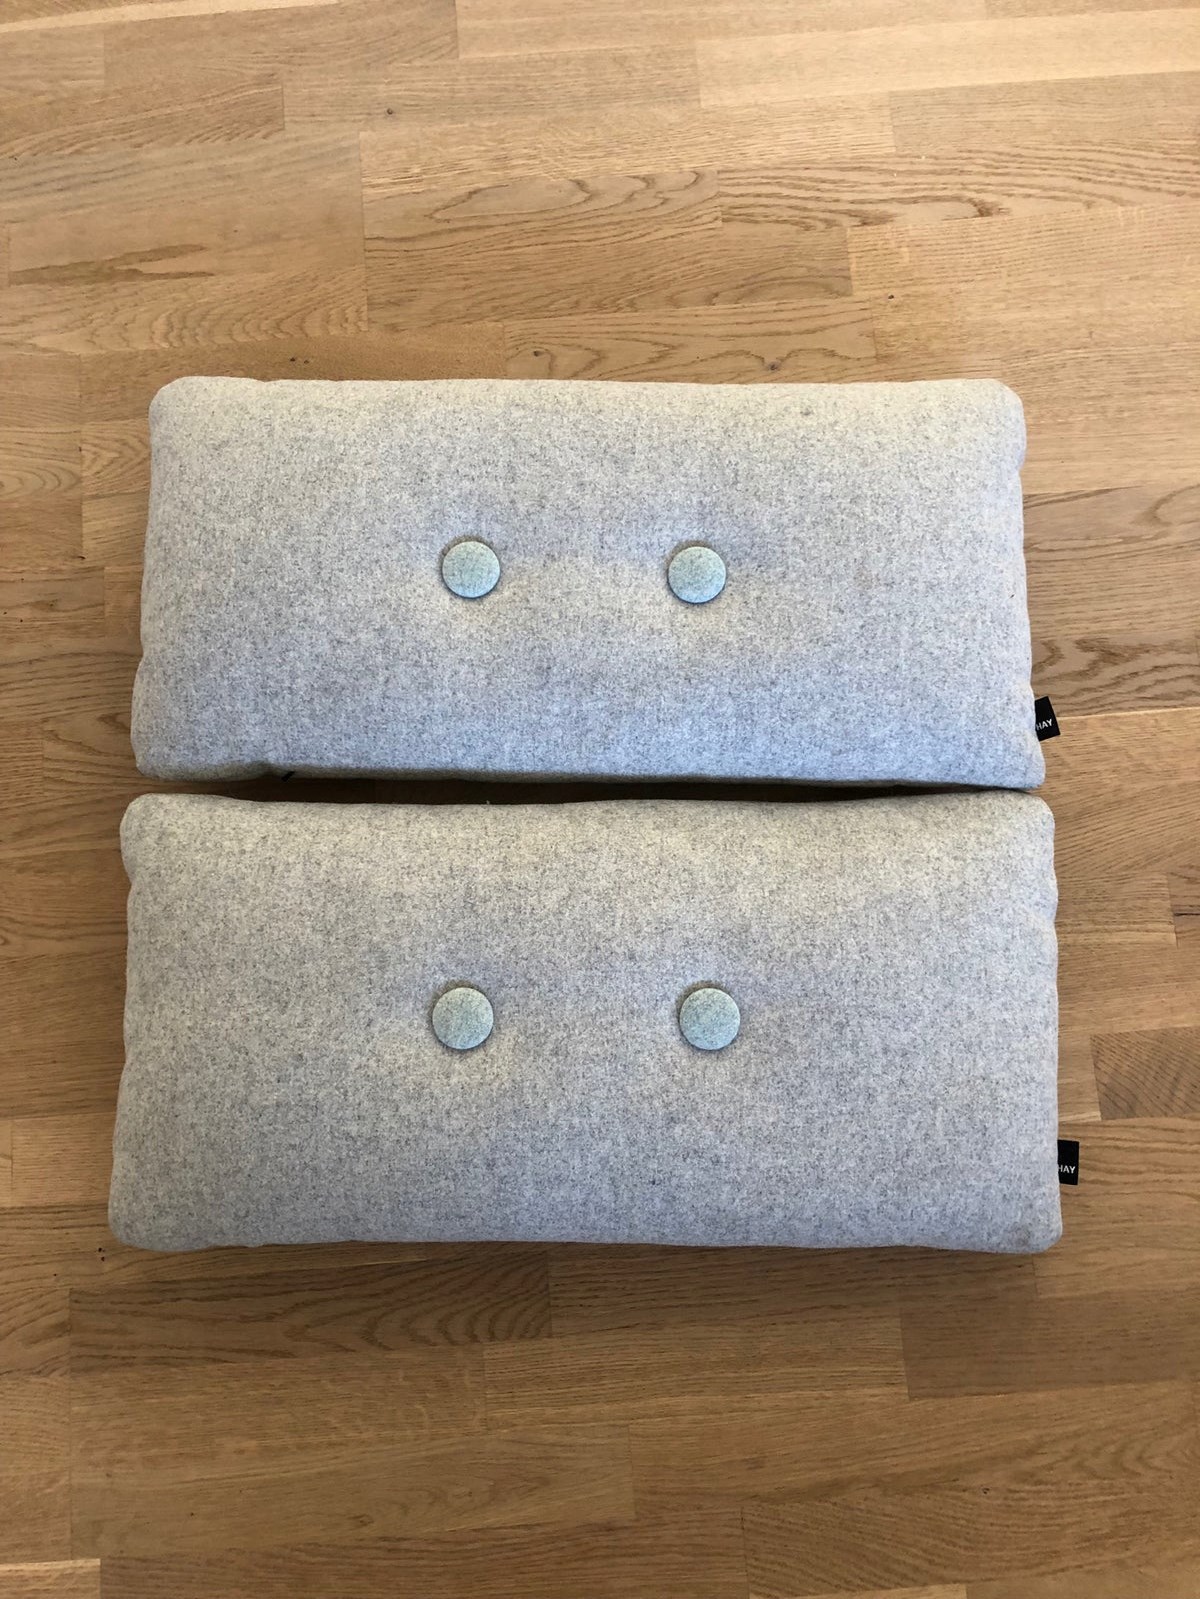 Disse grå sofapuder fra Hay sælger Anja fra Odense. Prisen for begge er 500 kroner.